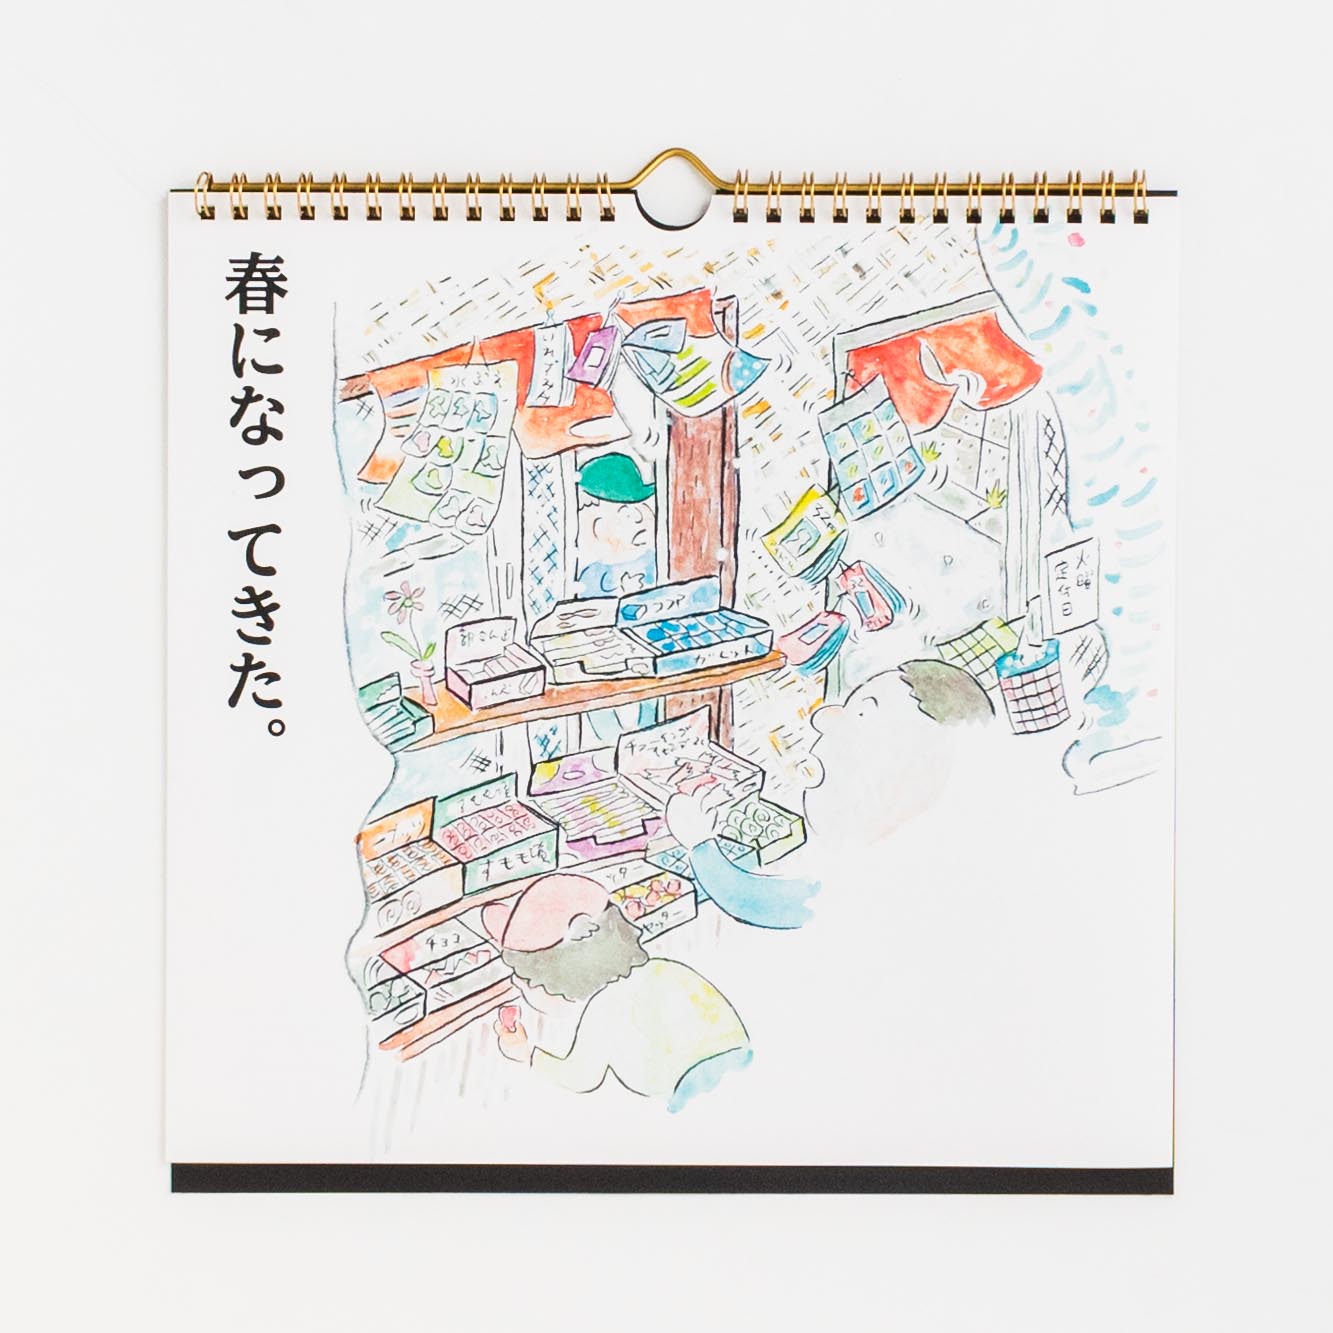 「ヨシギノプロ 様」製作のオリジナルカレンダー